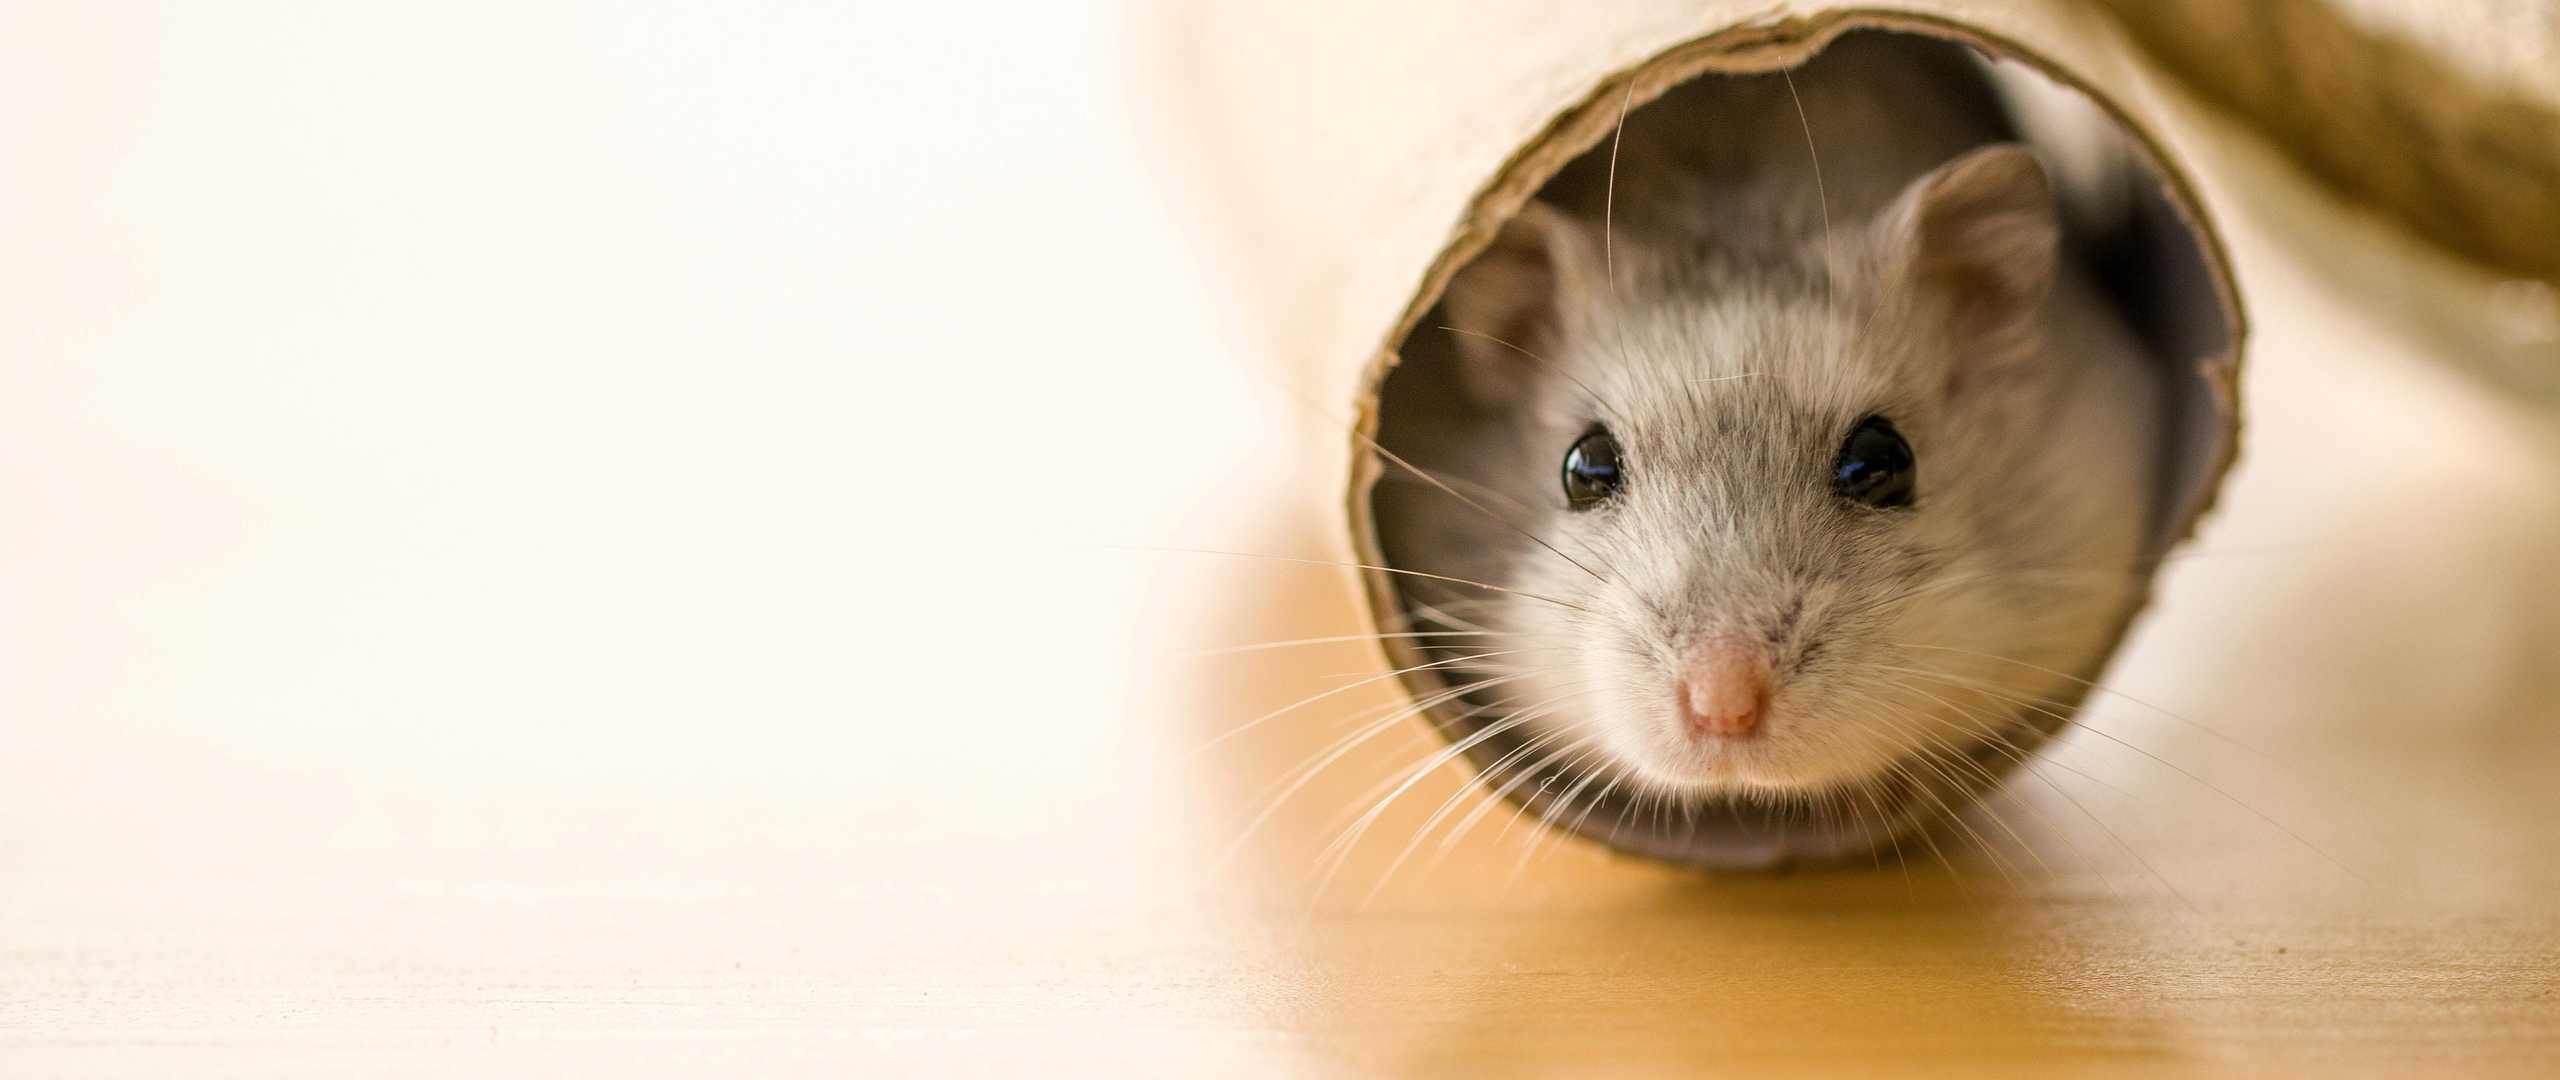 Maus in einer Röhre aus Pappe